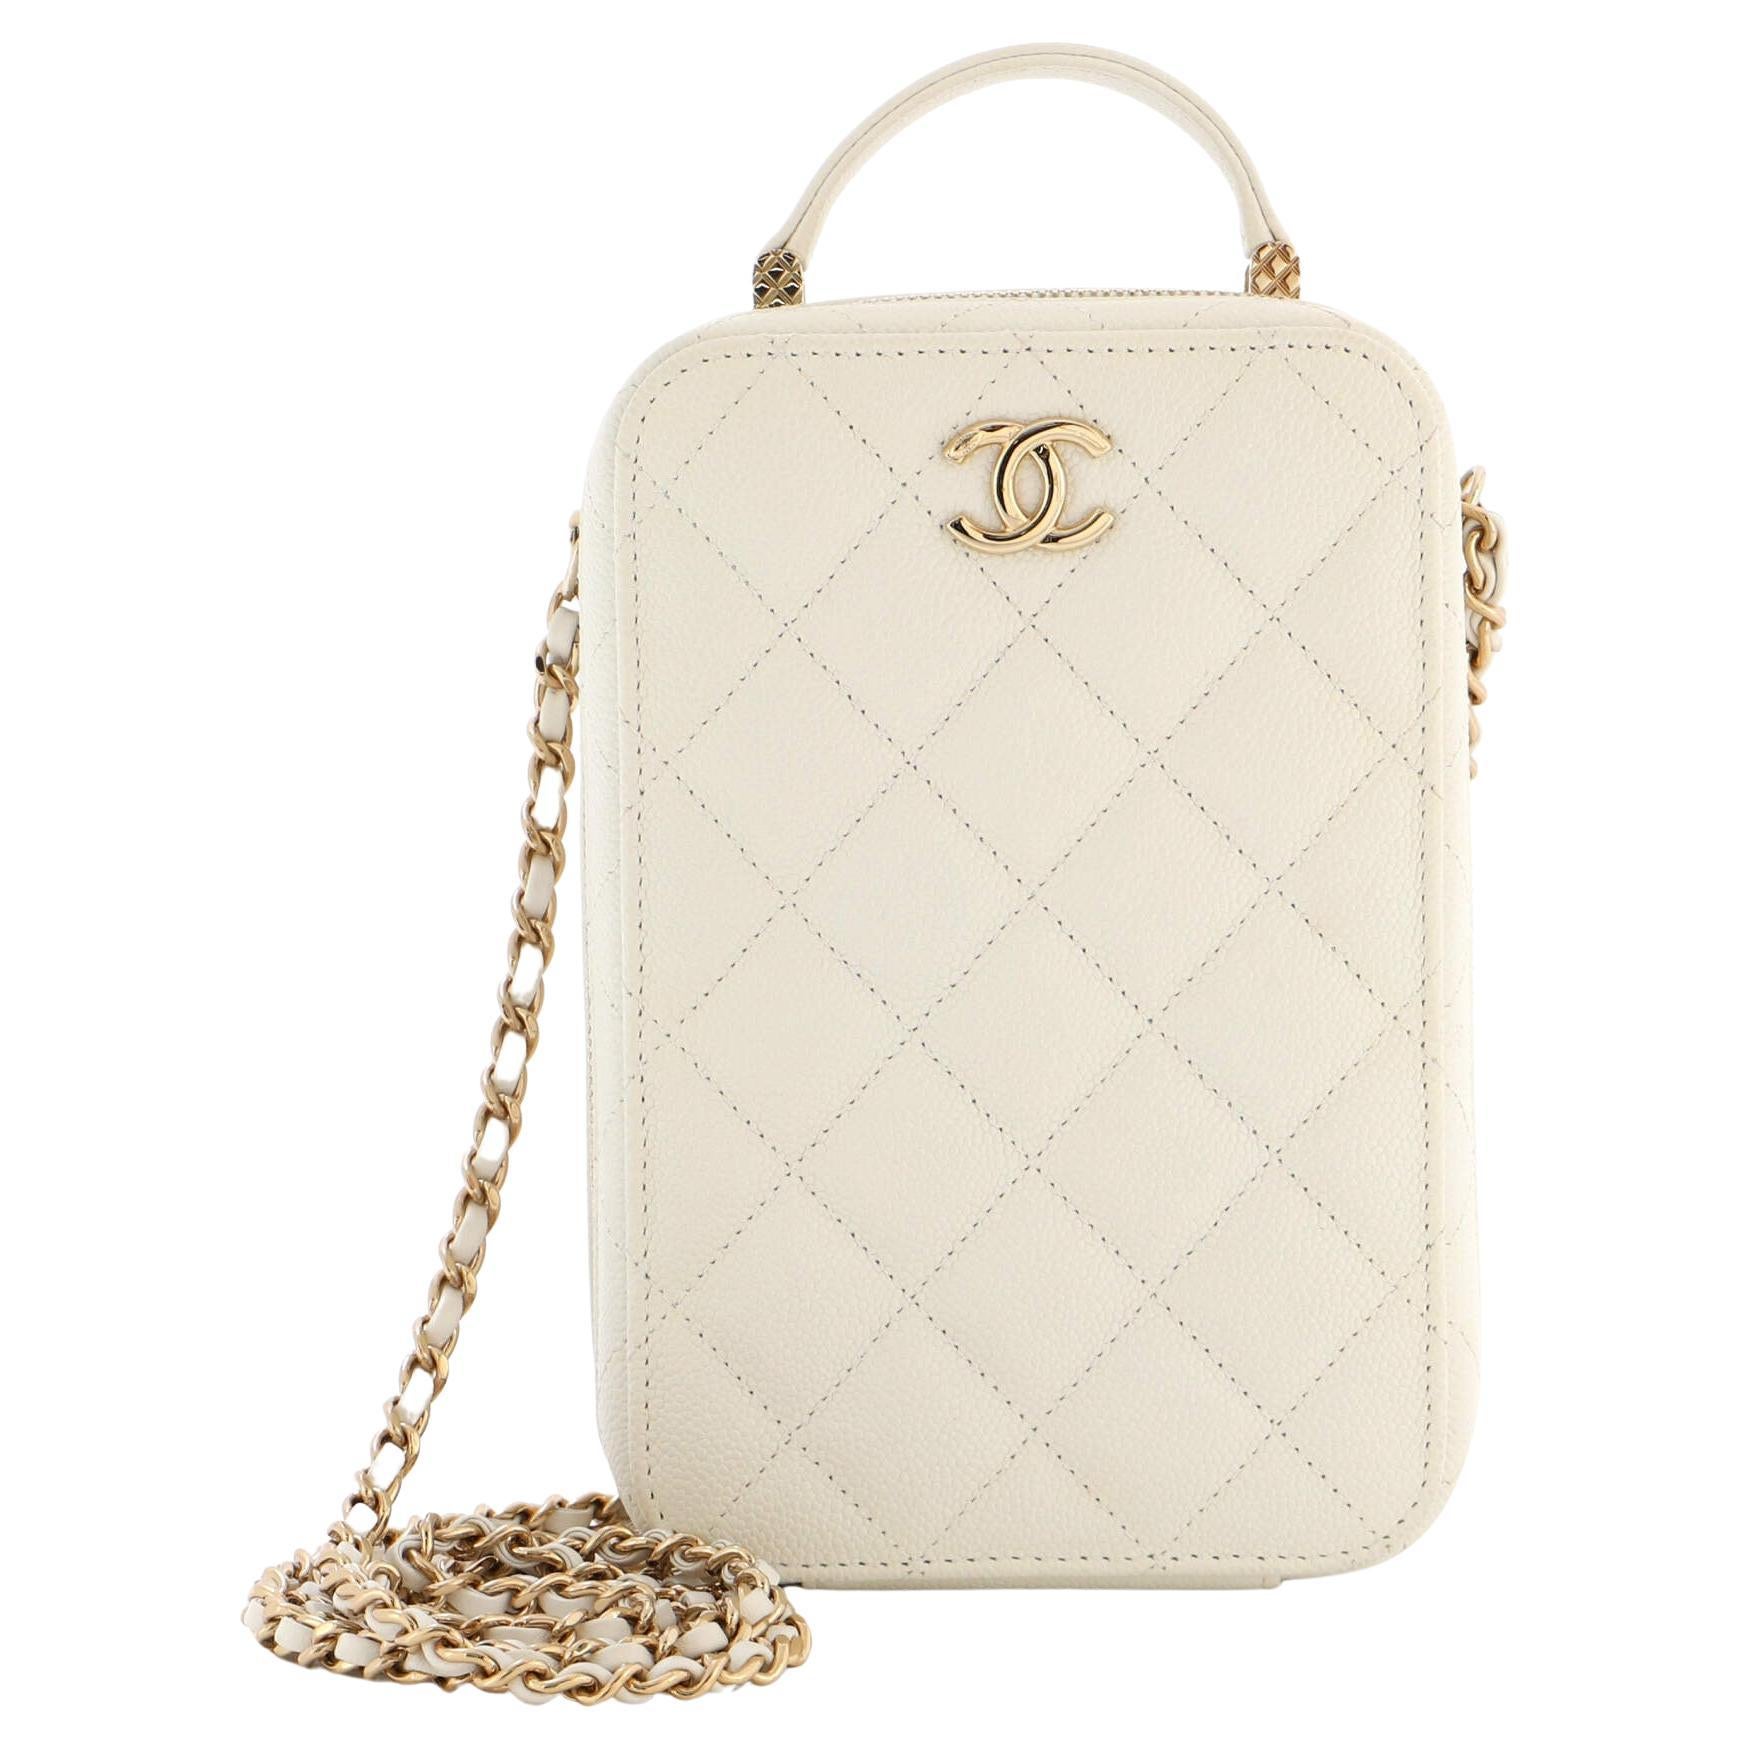 Chanel Mini Heart Bag